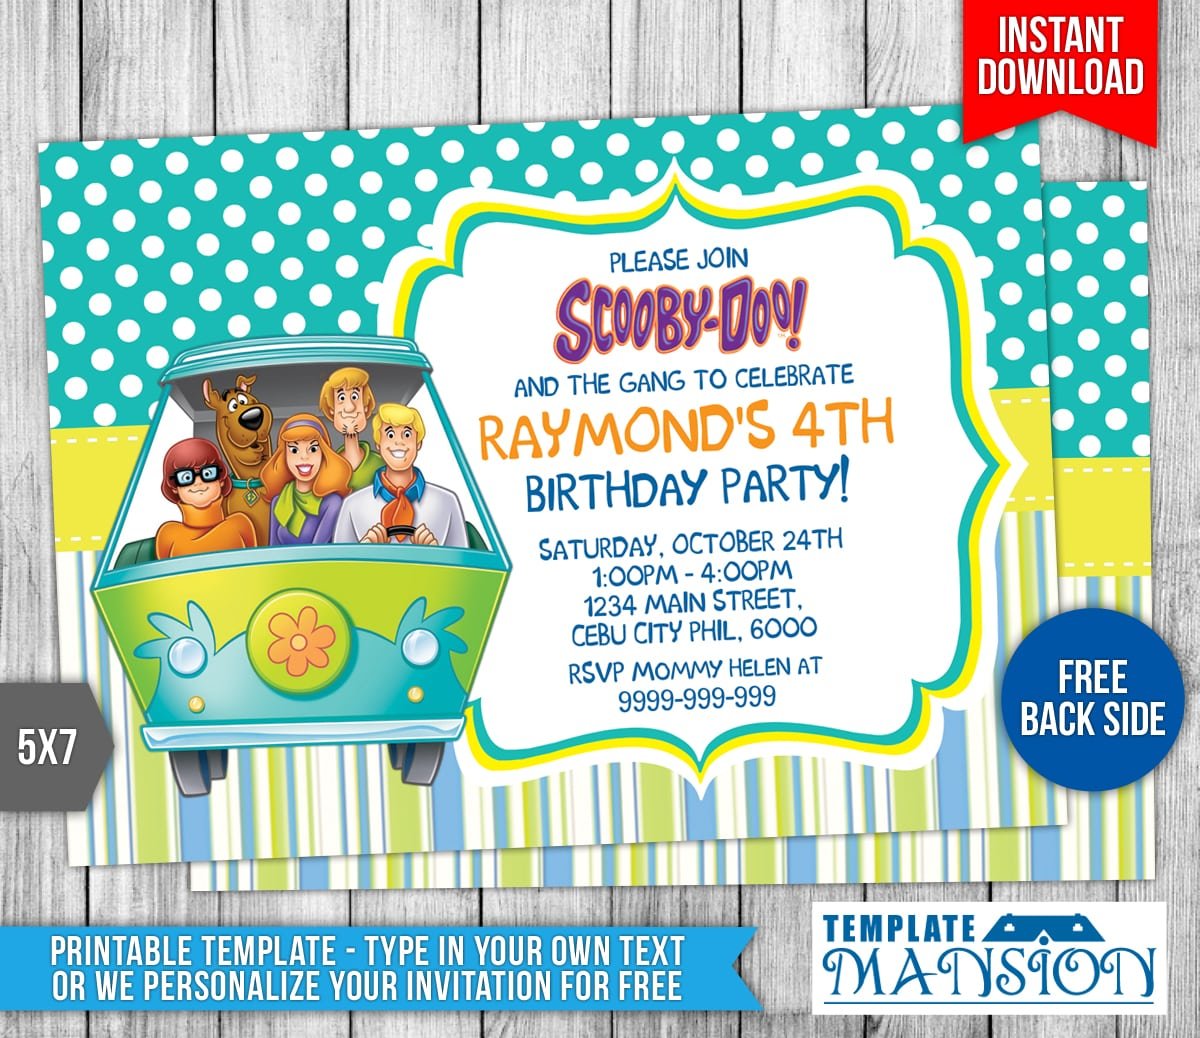 Free Scooby Doo Birthday Invitation